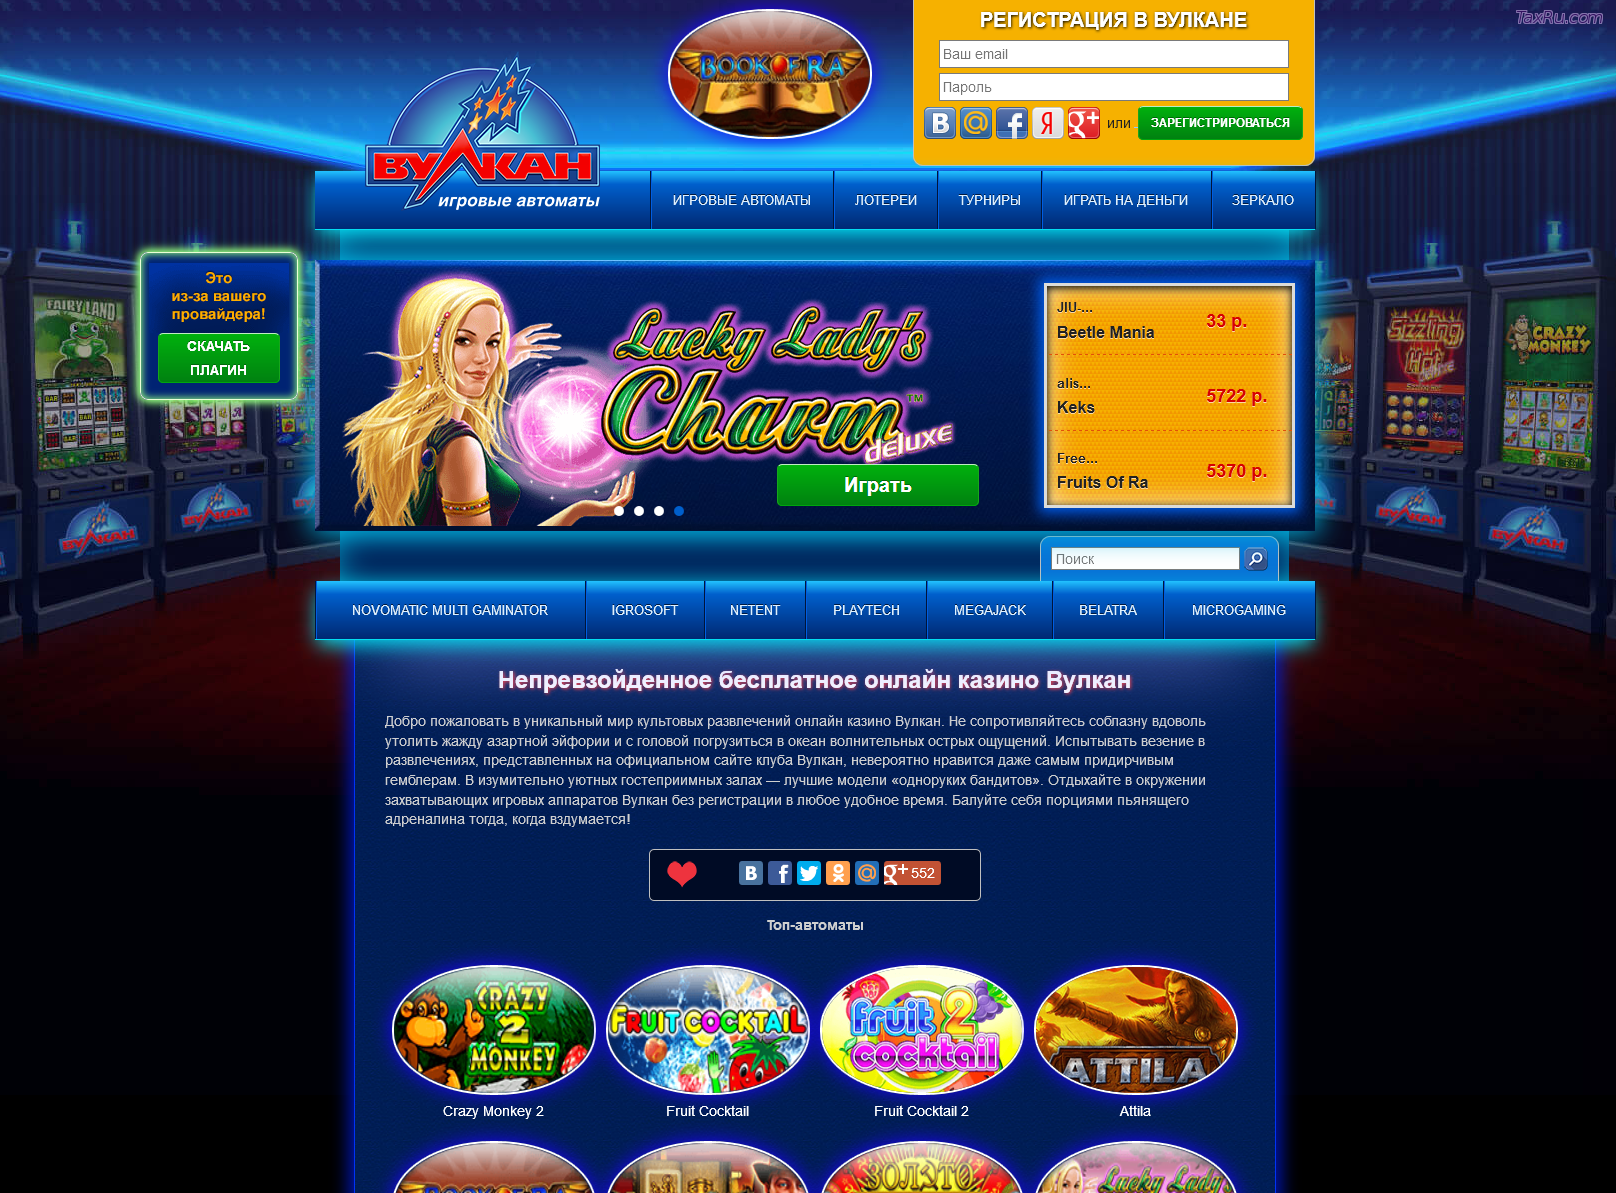 Вулкан казино официальный сайт мобильная версия скачать игровые автоматы автора